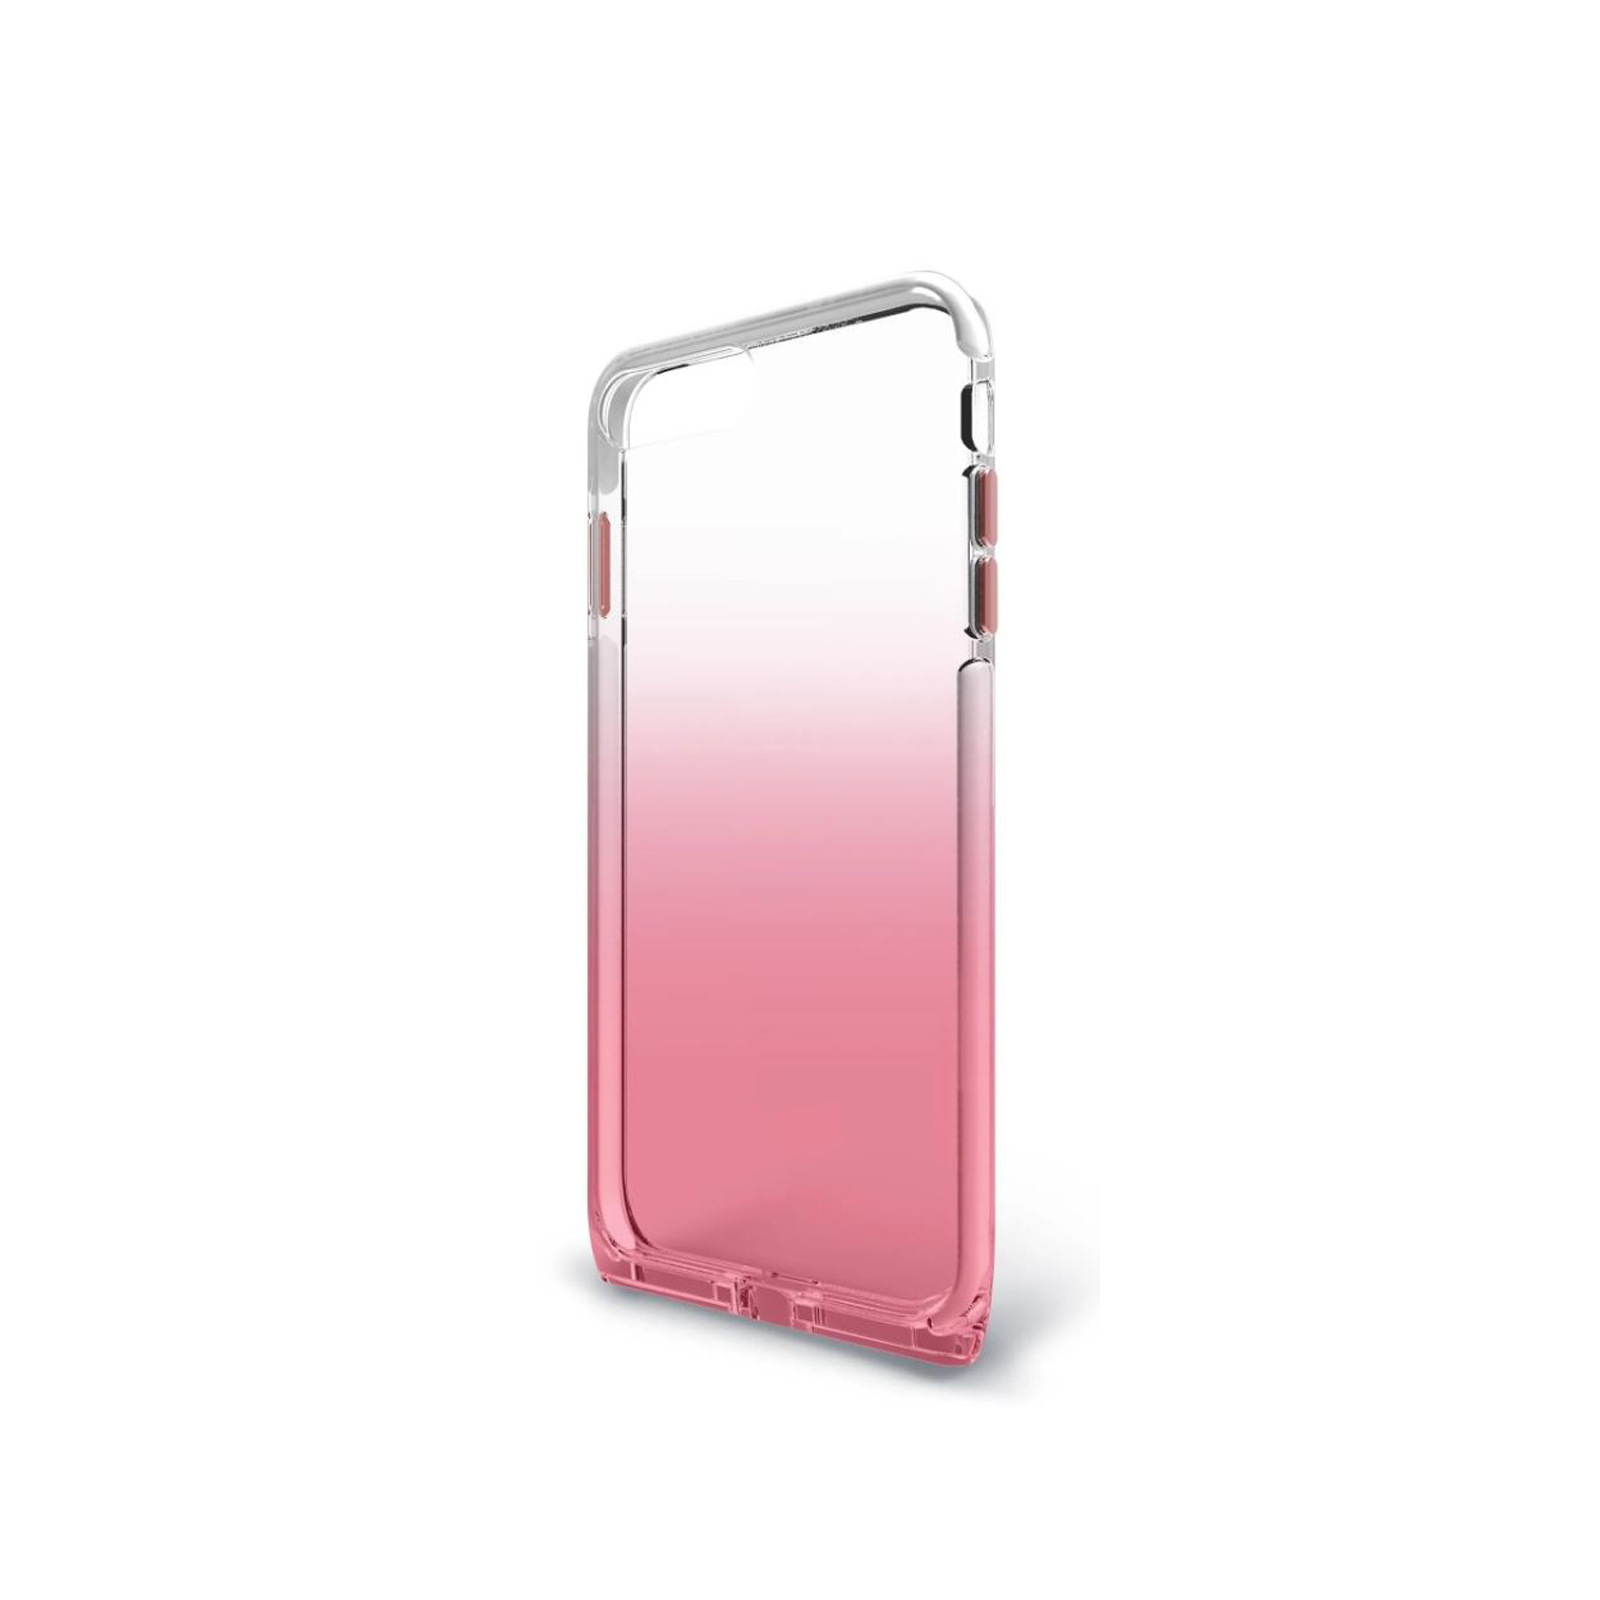 Harmony iPhone 6 Plus / 7 Plus / 8 Plus Case [Clear / Rose]